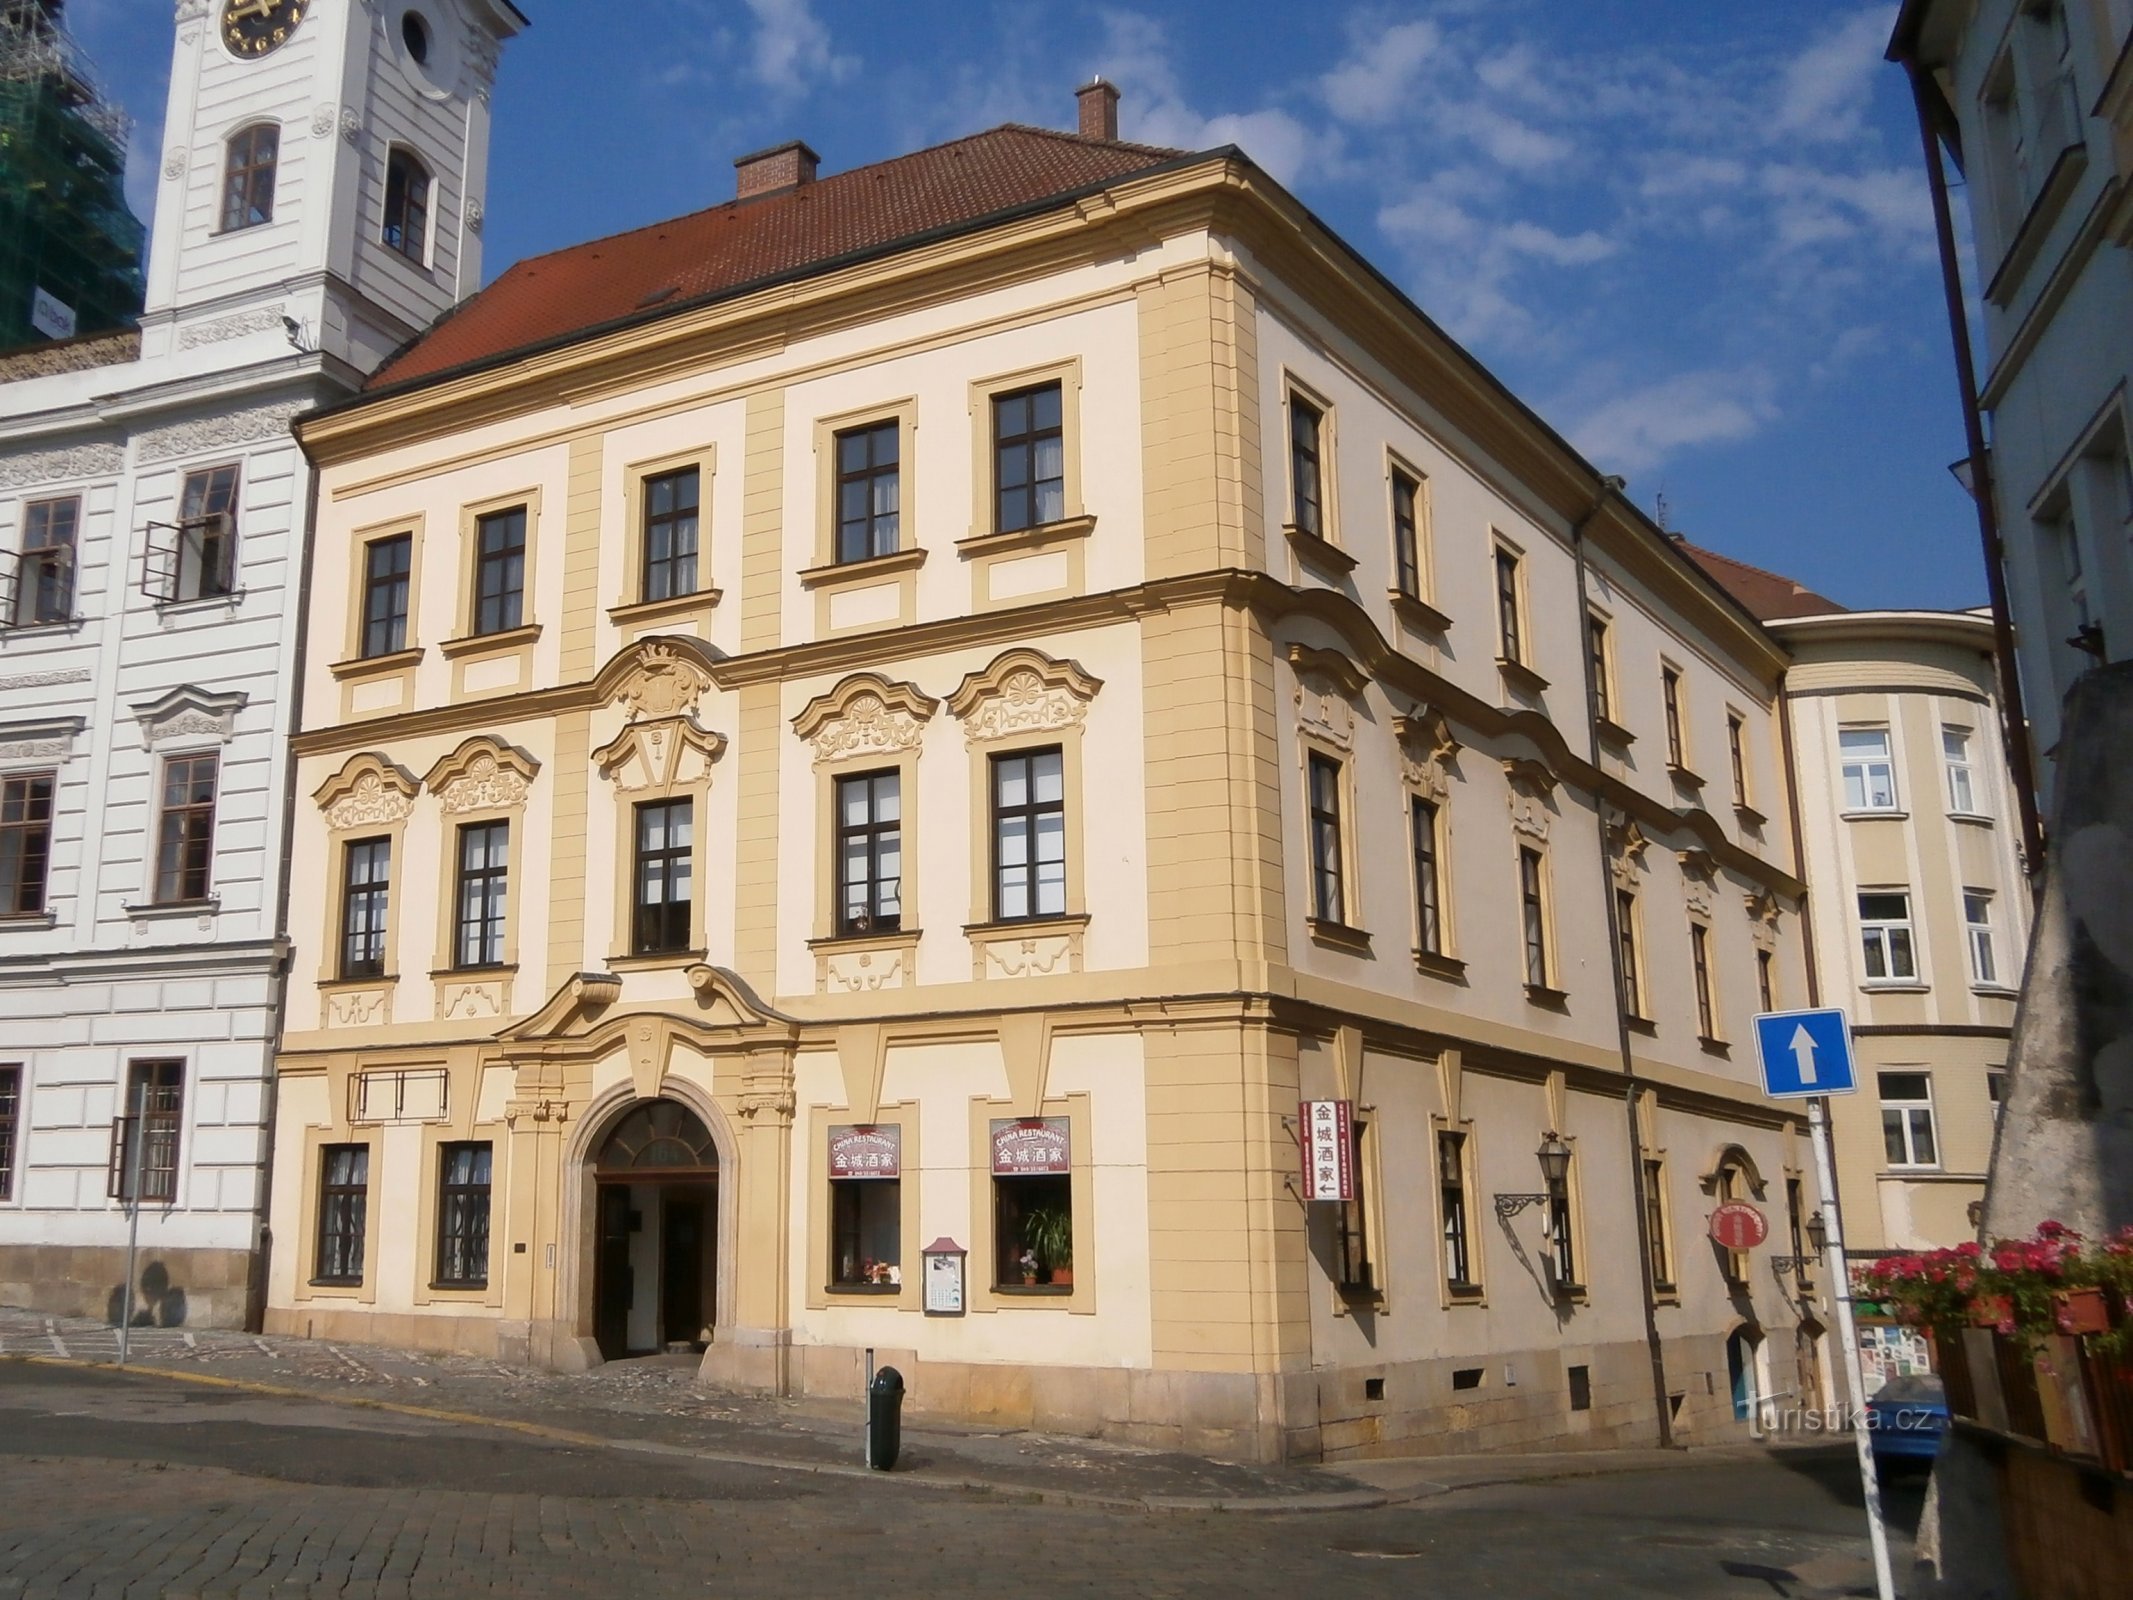 Velké náměstí nr. 164 (Hradec Králové, 8.7.2014. oktober XNUMX)